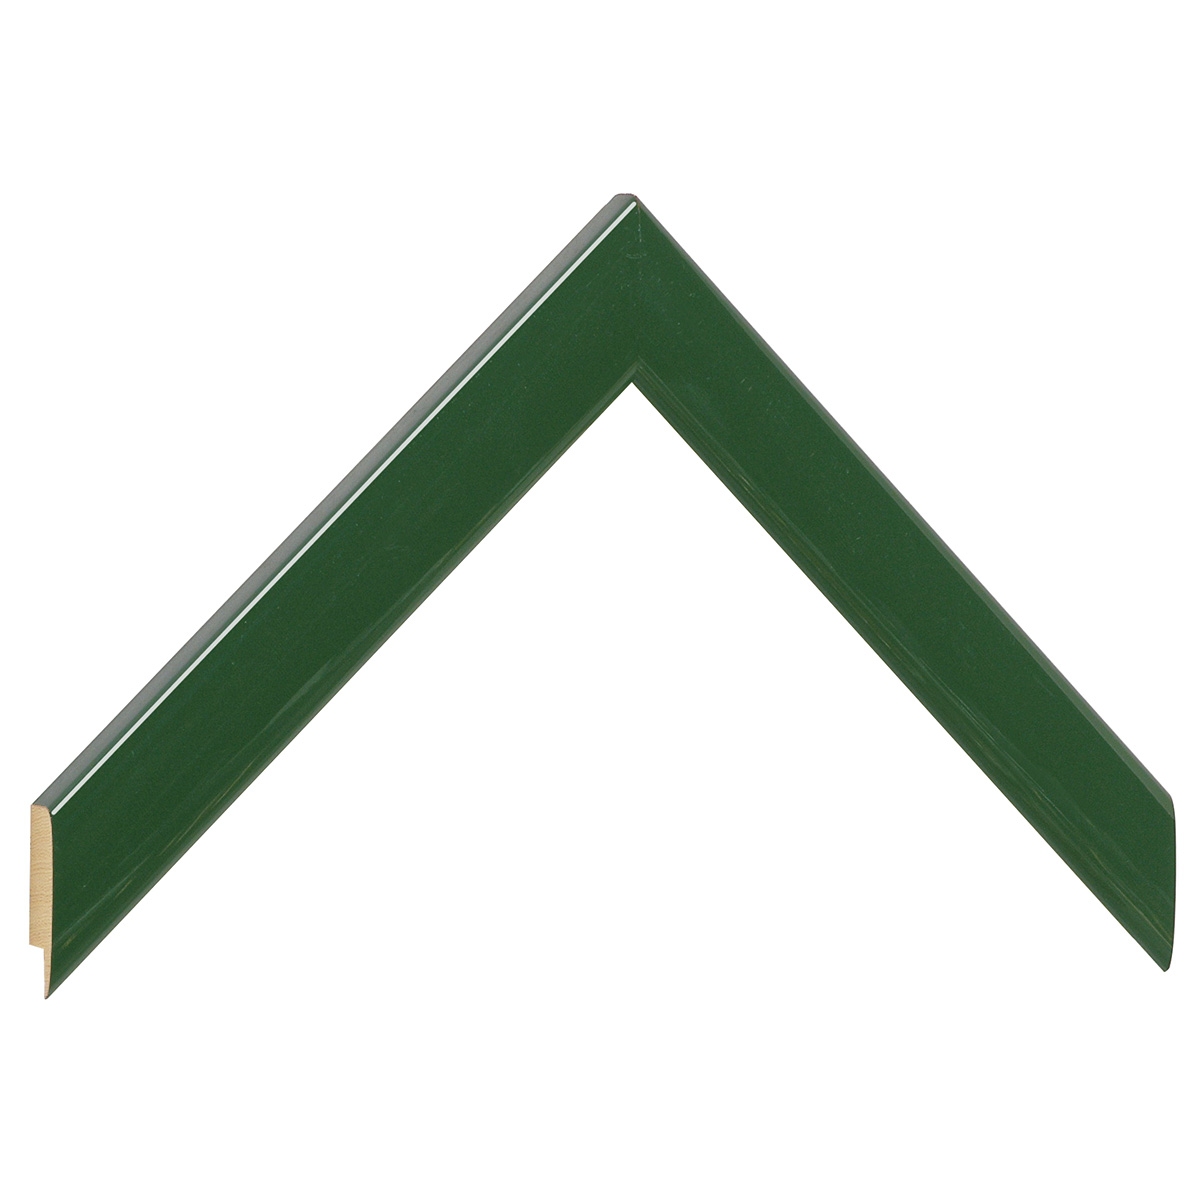 Bilderleiste Ayous flach 23 mm breit 13 hoch - Grün glänzend - Musterwinkel